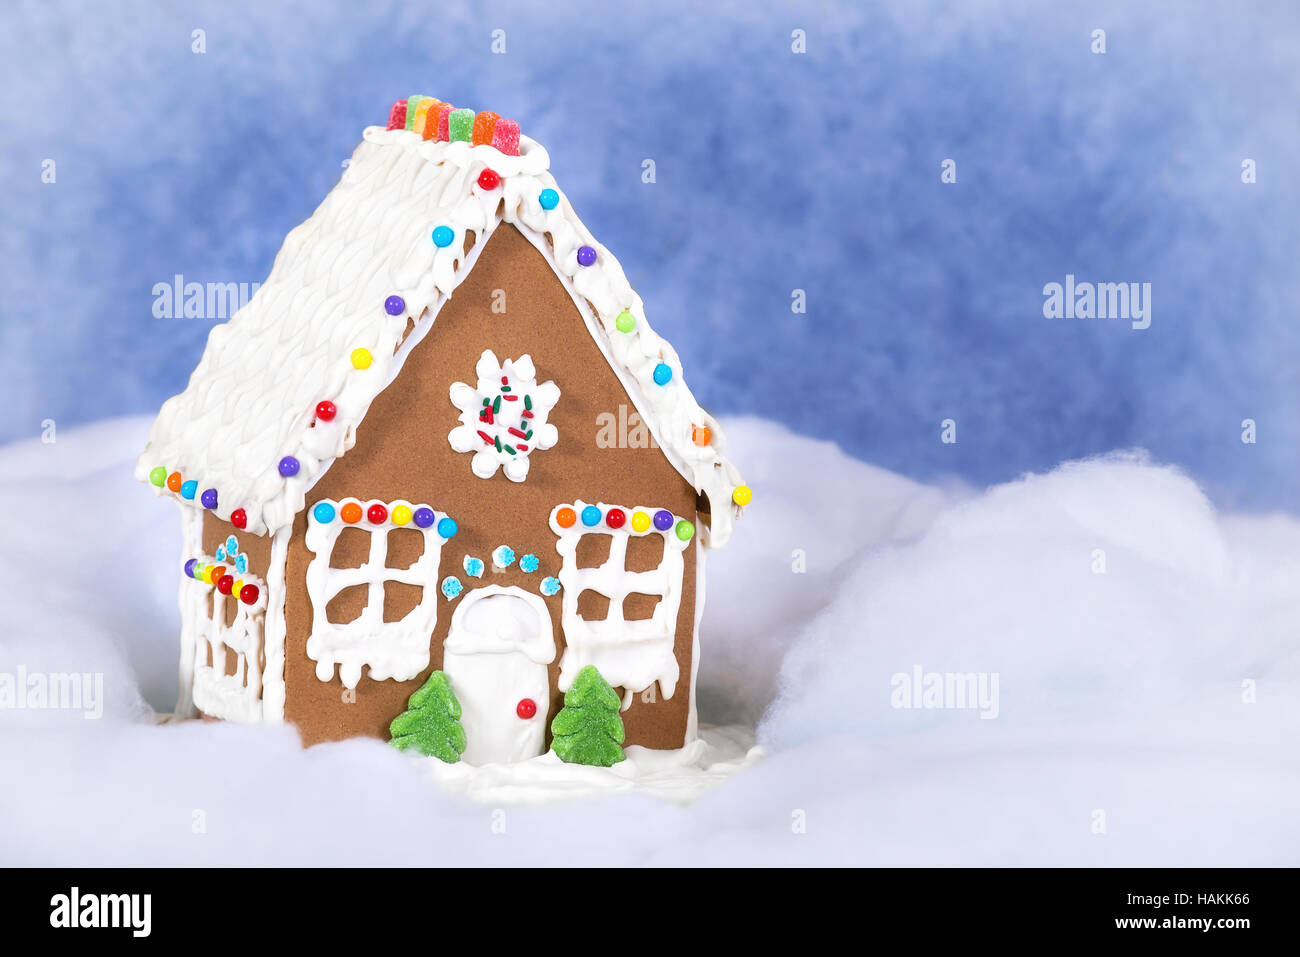 Noël fait maison Gingerbread House affiche de la neige et du ciel bleu Banque D'Images